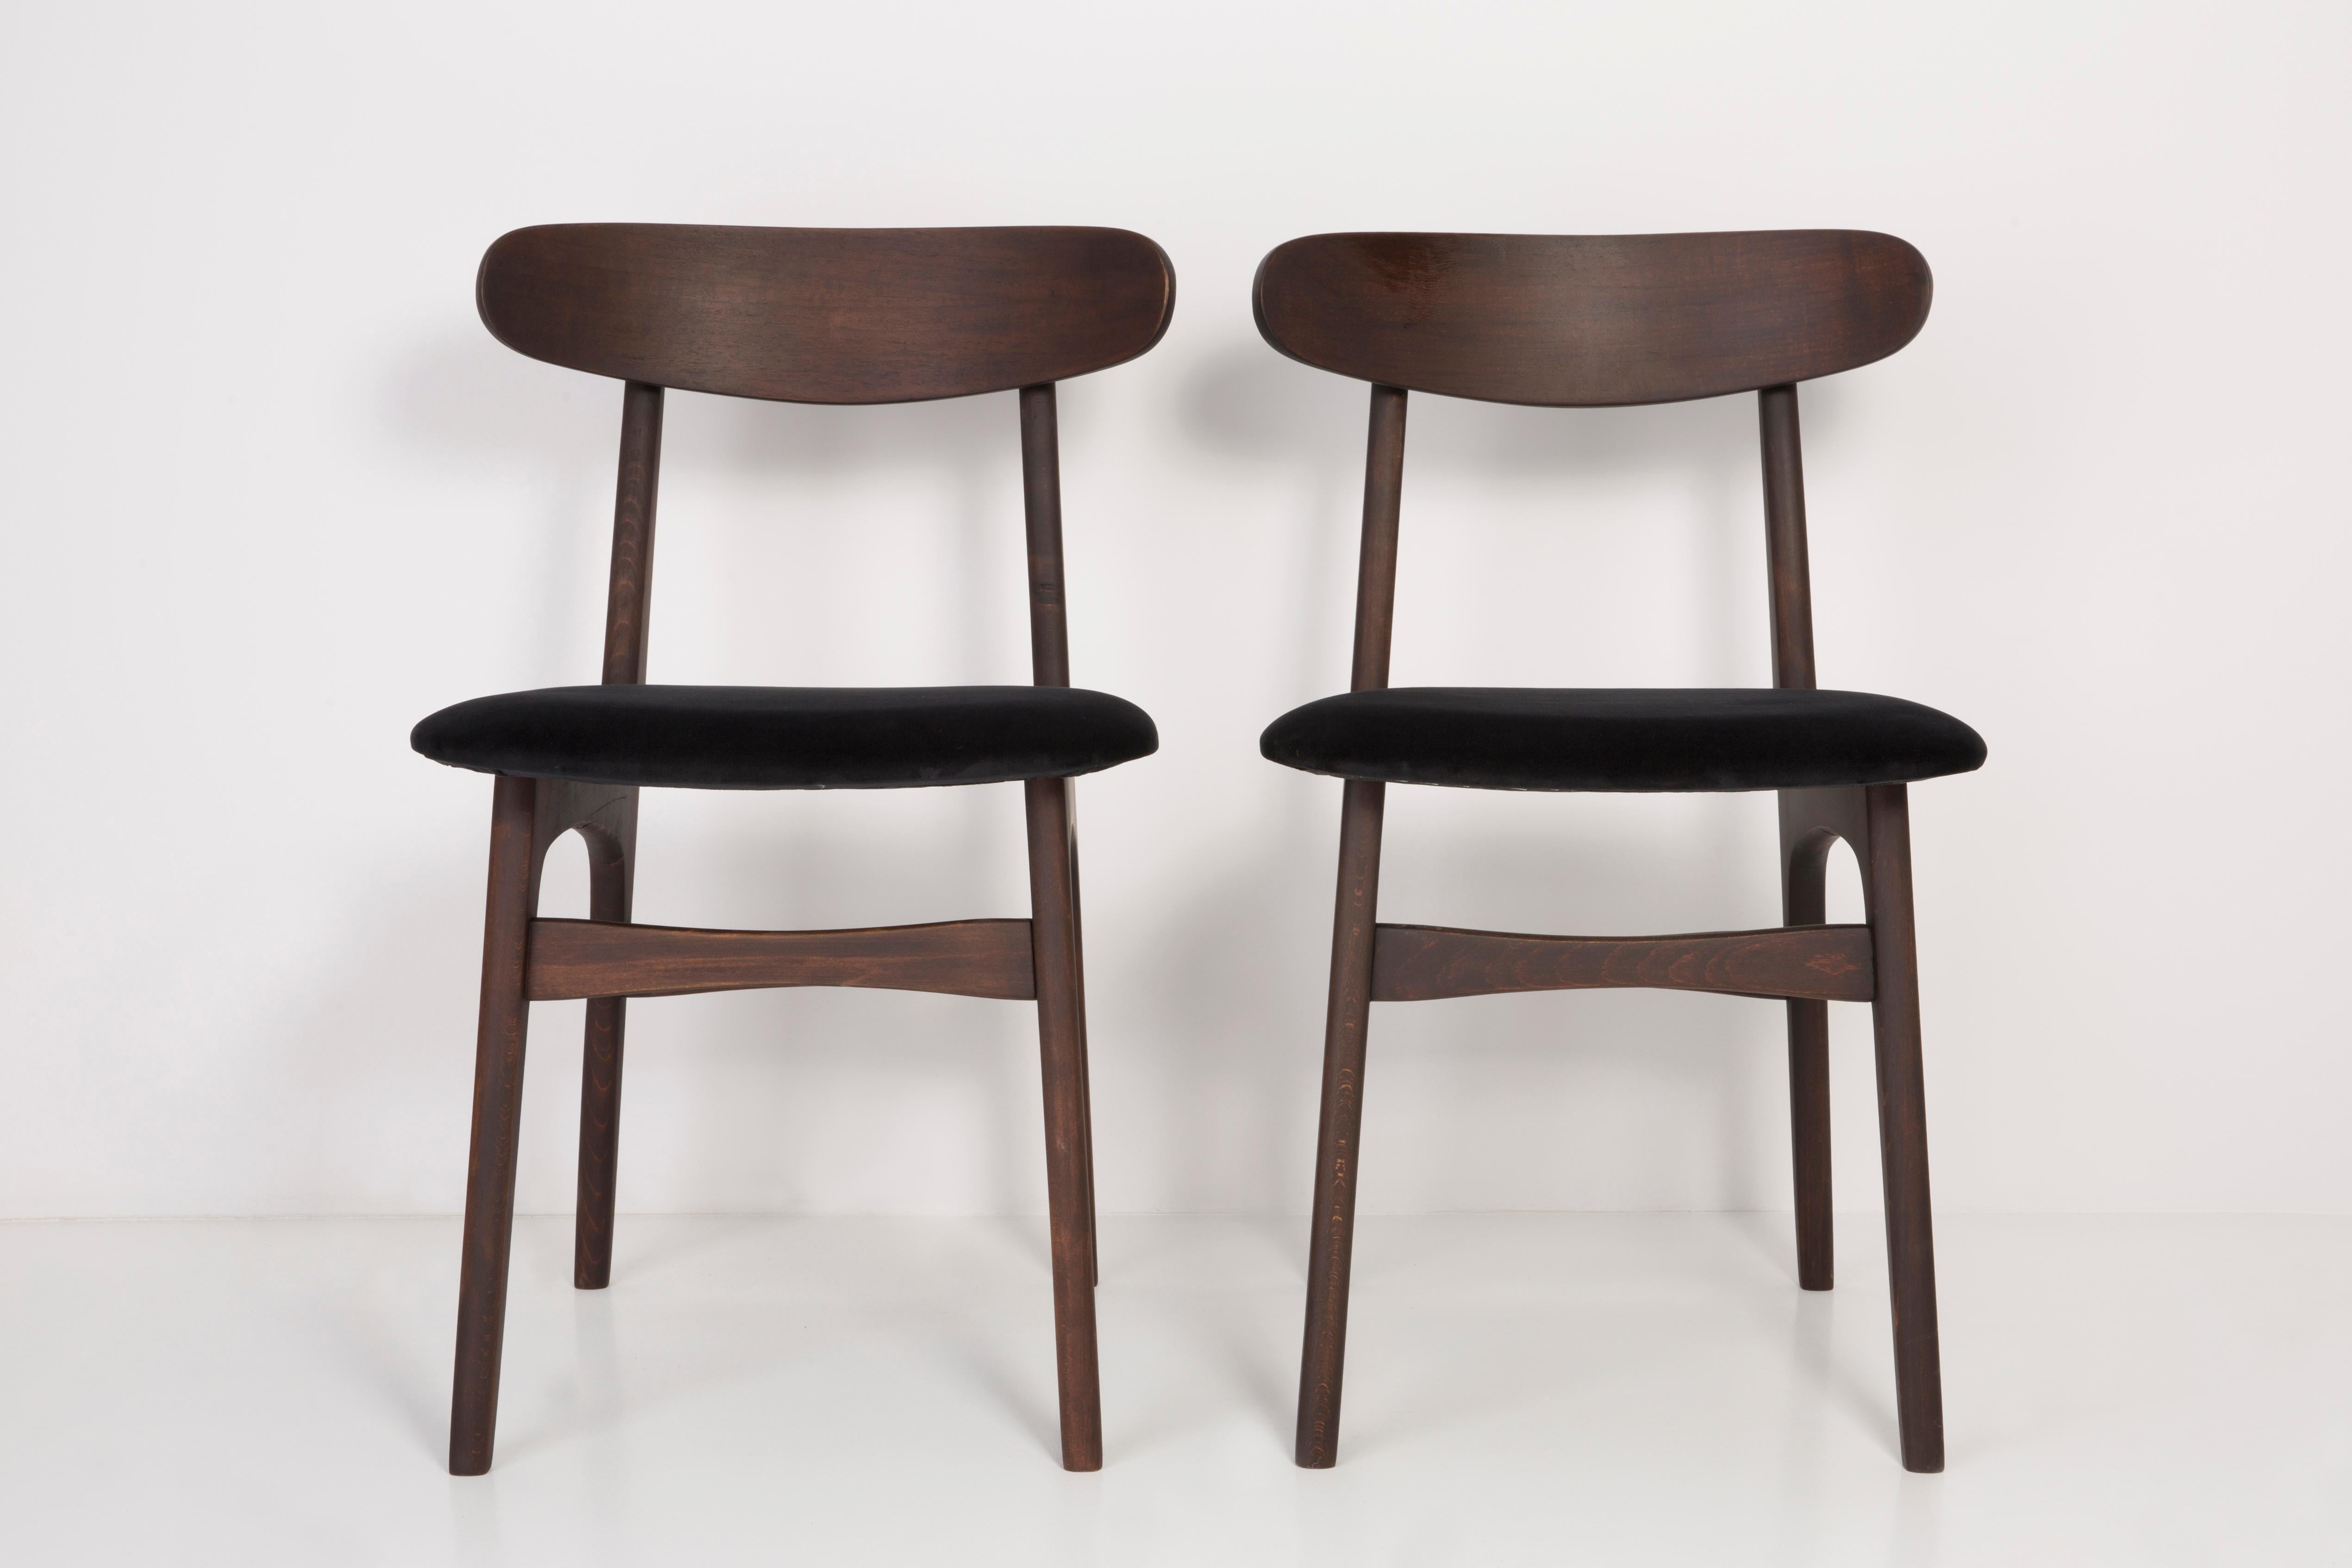 Stühle entworfen von Prof. Rajmund Halas. Hergestellt aus Buchenholz. Der Stuhl wurde komplett neu gepolstert, die Holzarbeiten wurden aufgefrischt. Sitz und Rückenlehne sind mit schwarzem, strapazierfähigem und angenehm zu berührendem Samtstoff